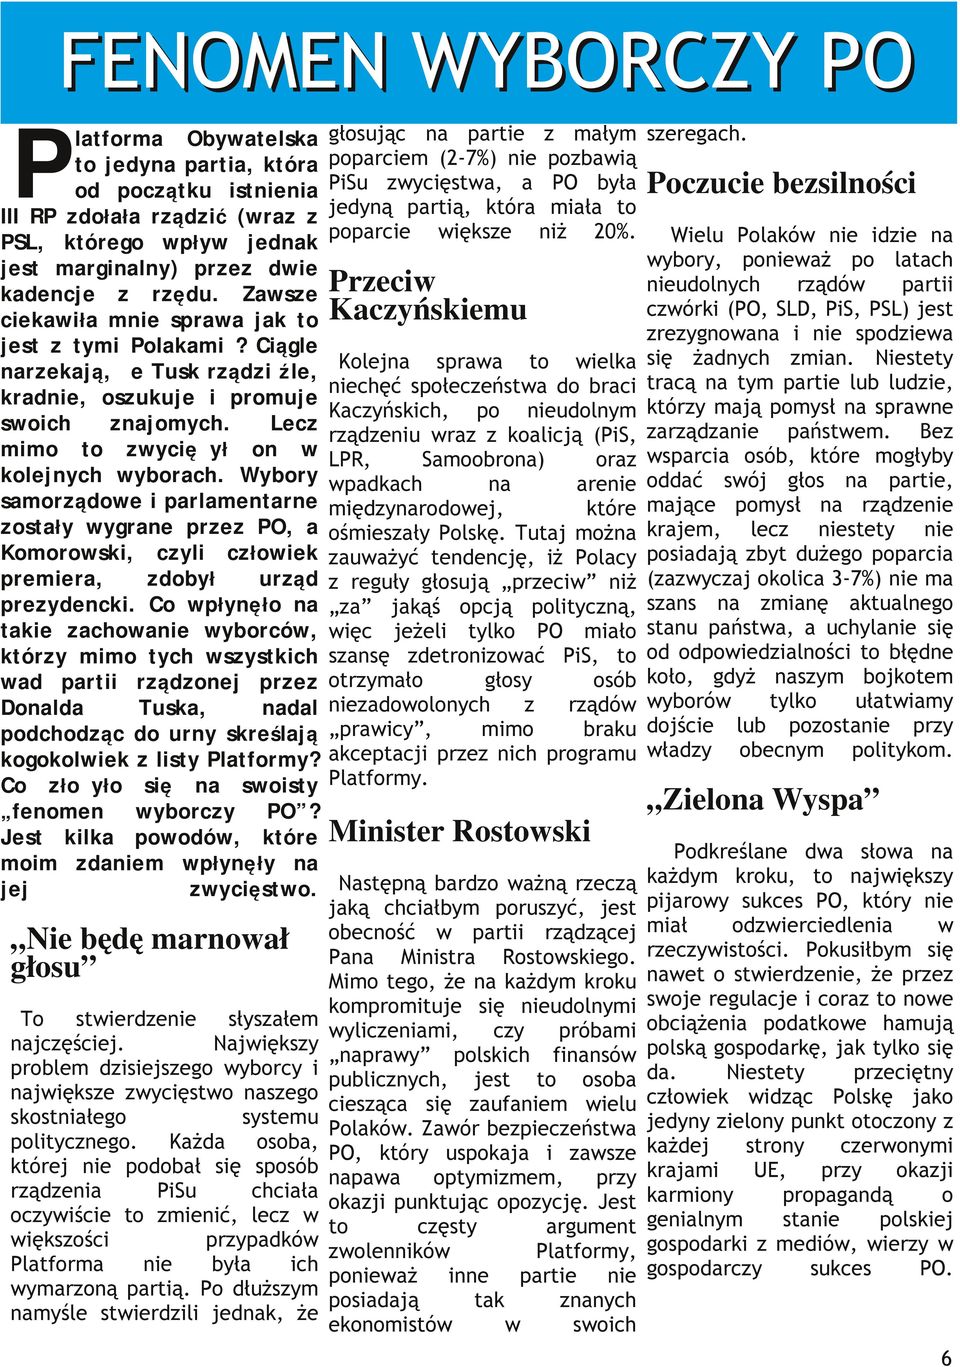 Wybory samorądoe i parlamentarne ostały ygrane pre PO, a Komoroski, cyli cłoiek premiera, dobył urąd preydencki.